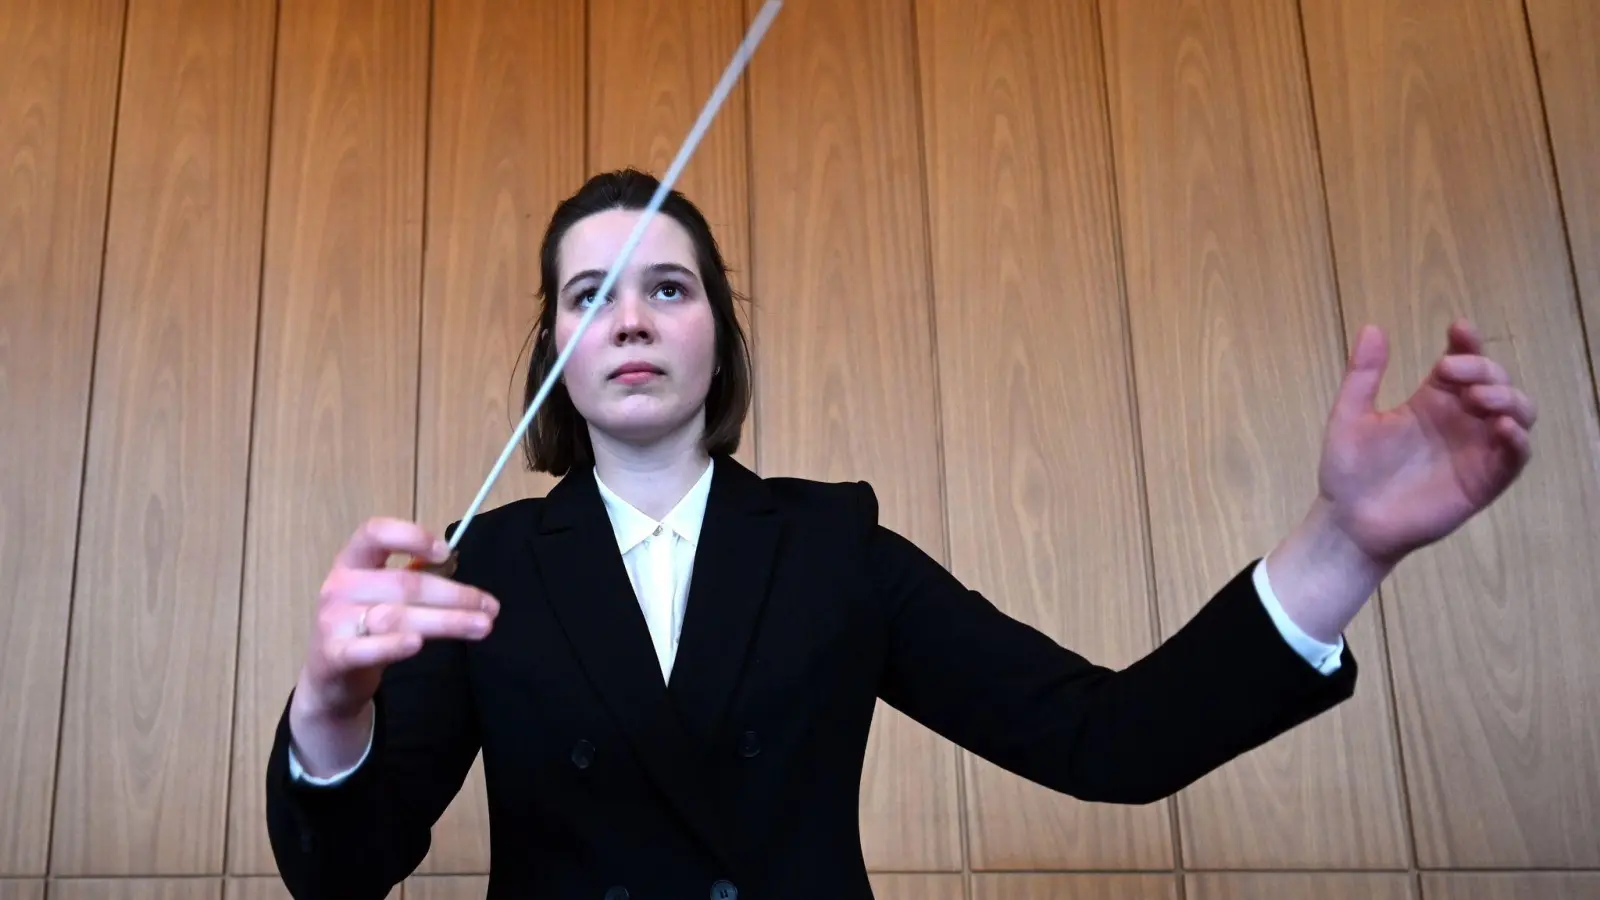 Nachwuchs-Dirigentin Mareike Jörling ist eine von wenigen Frauen in ihrem Beruf. (Foto: Carmen Jaspersen/dpa)